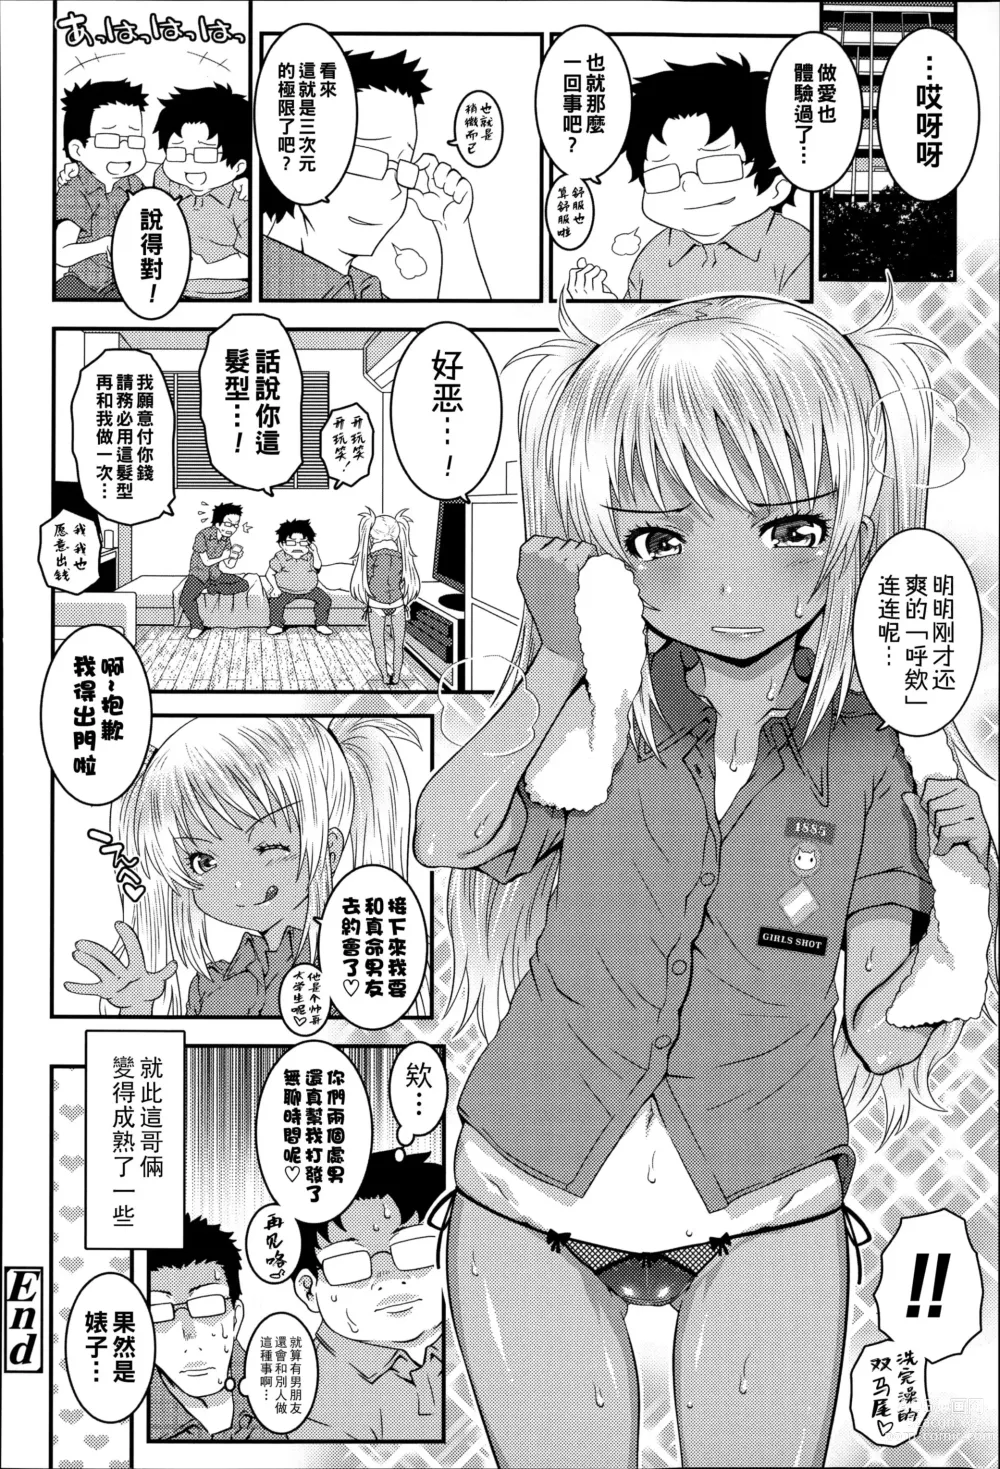 Page 18 of manga Bitch!!